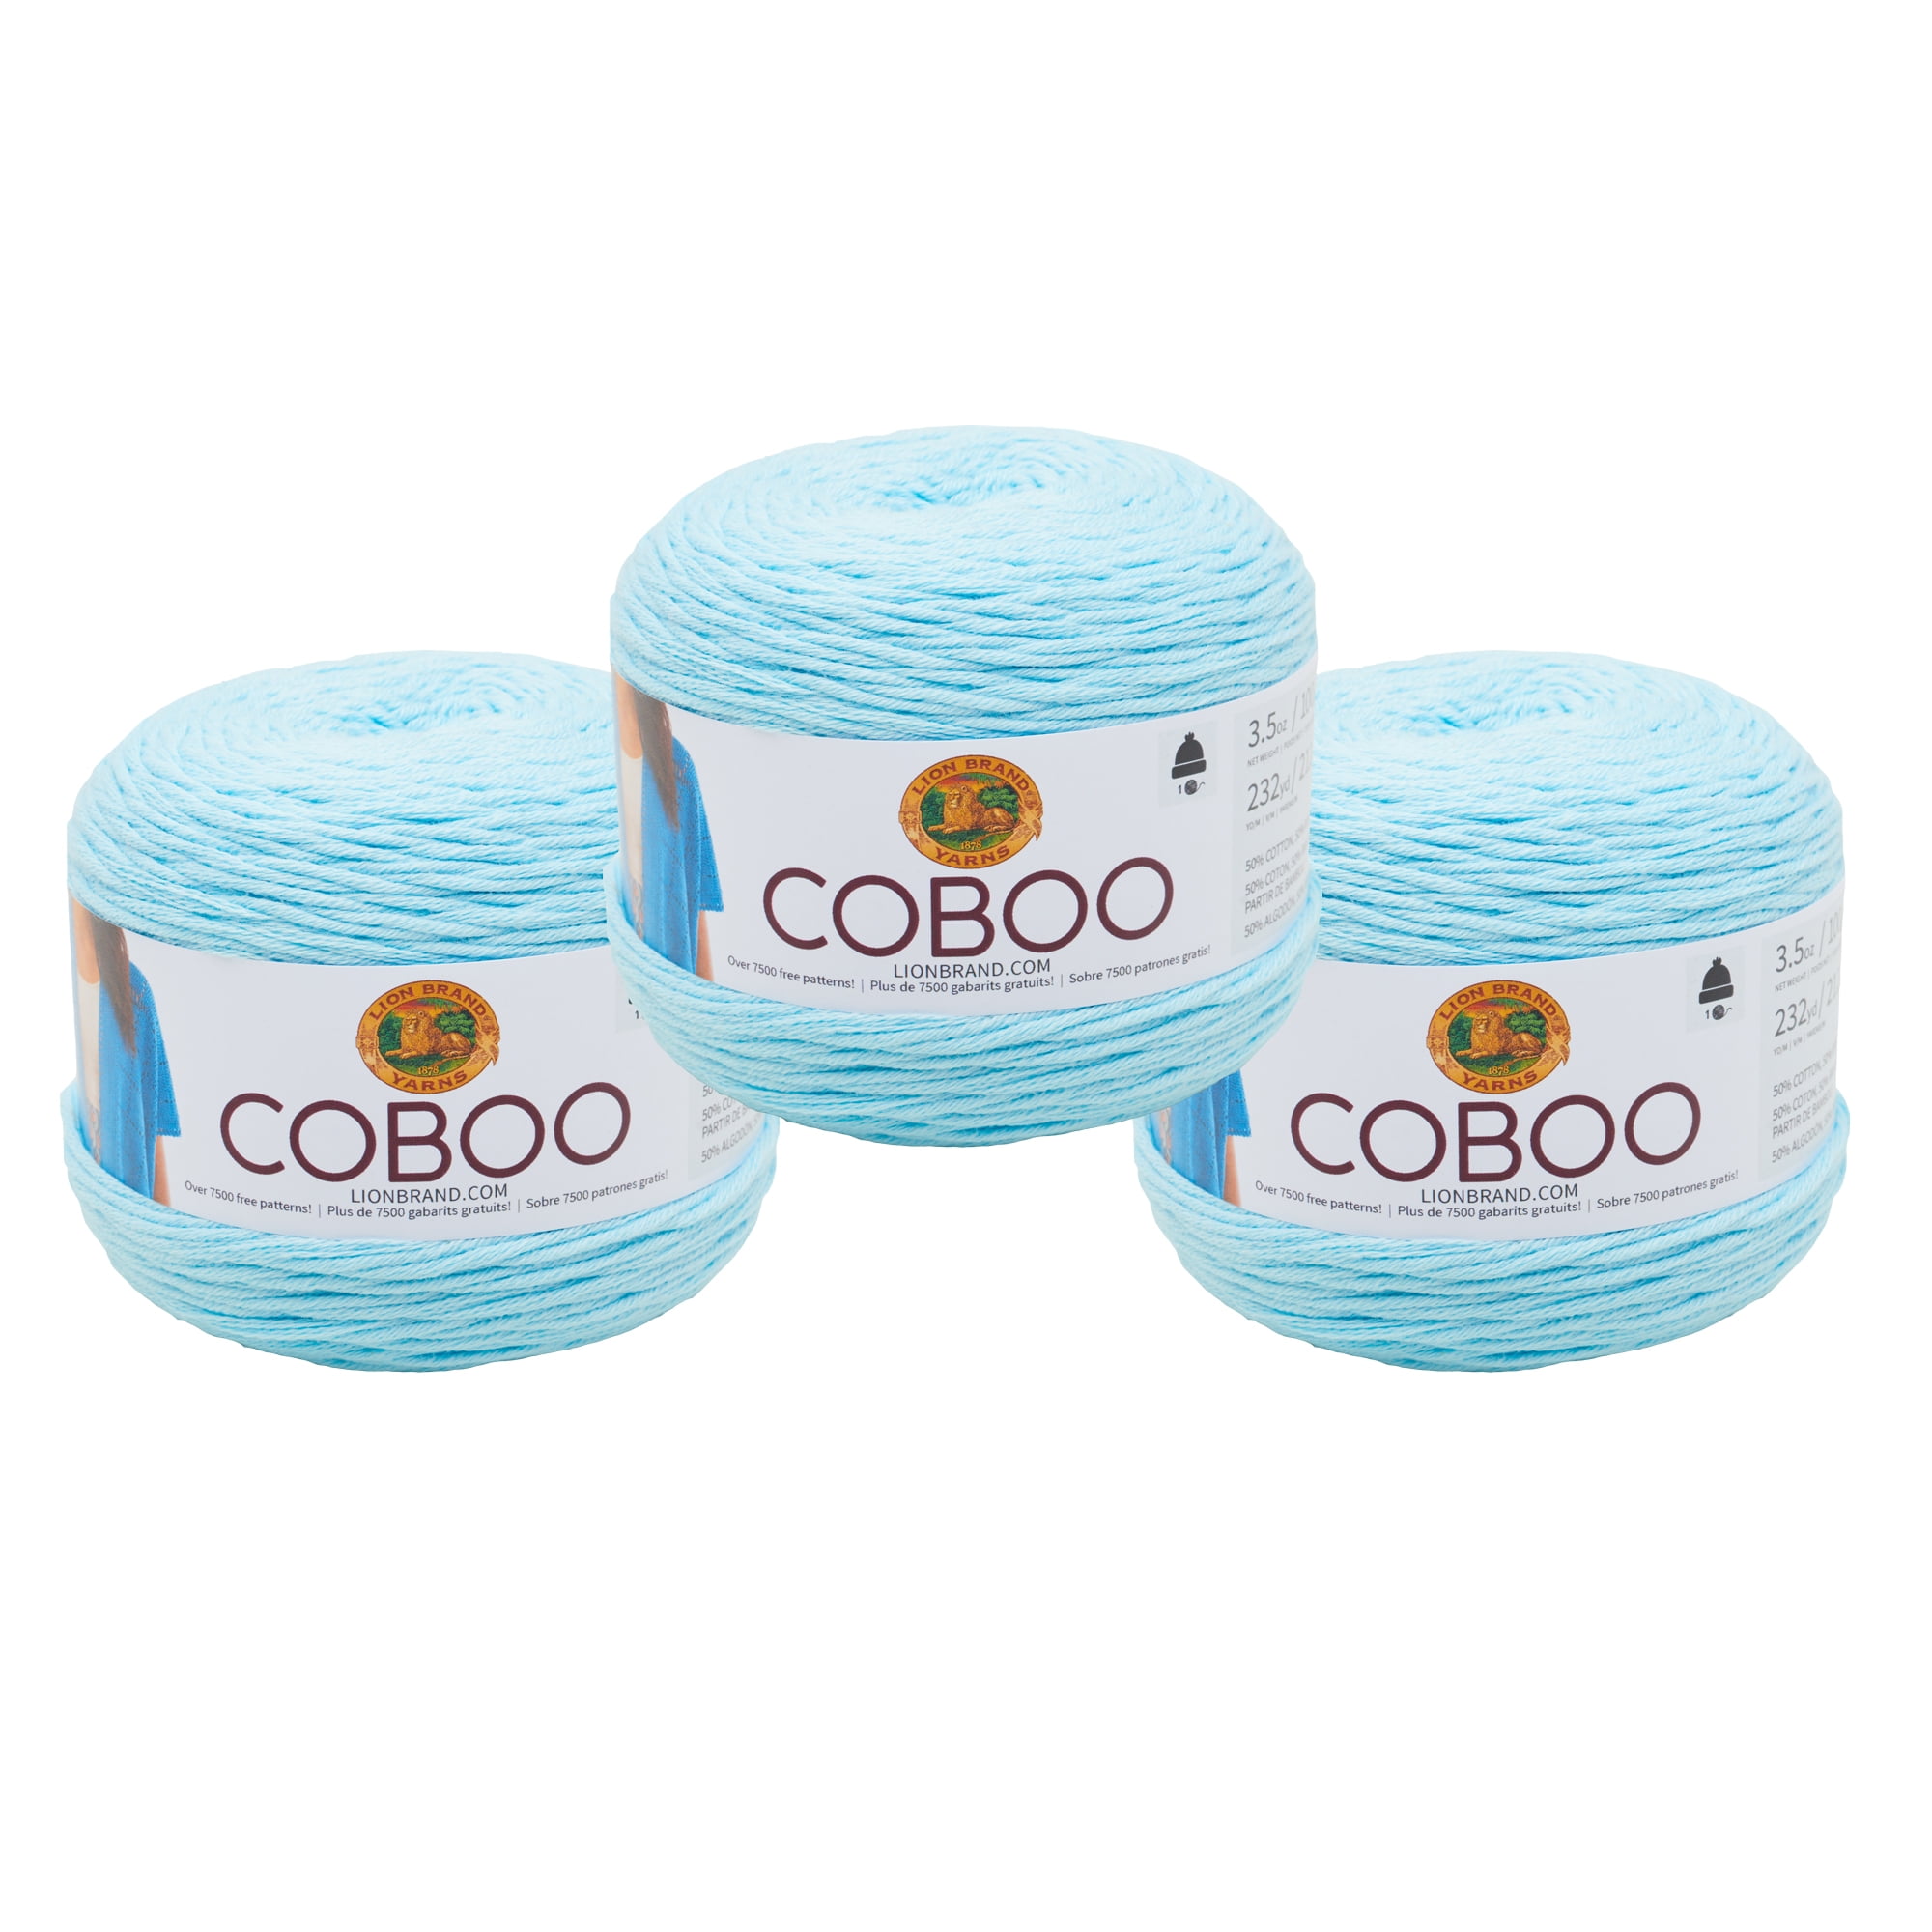 Coboo Yarn – Yarn Over